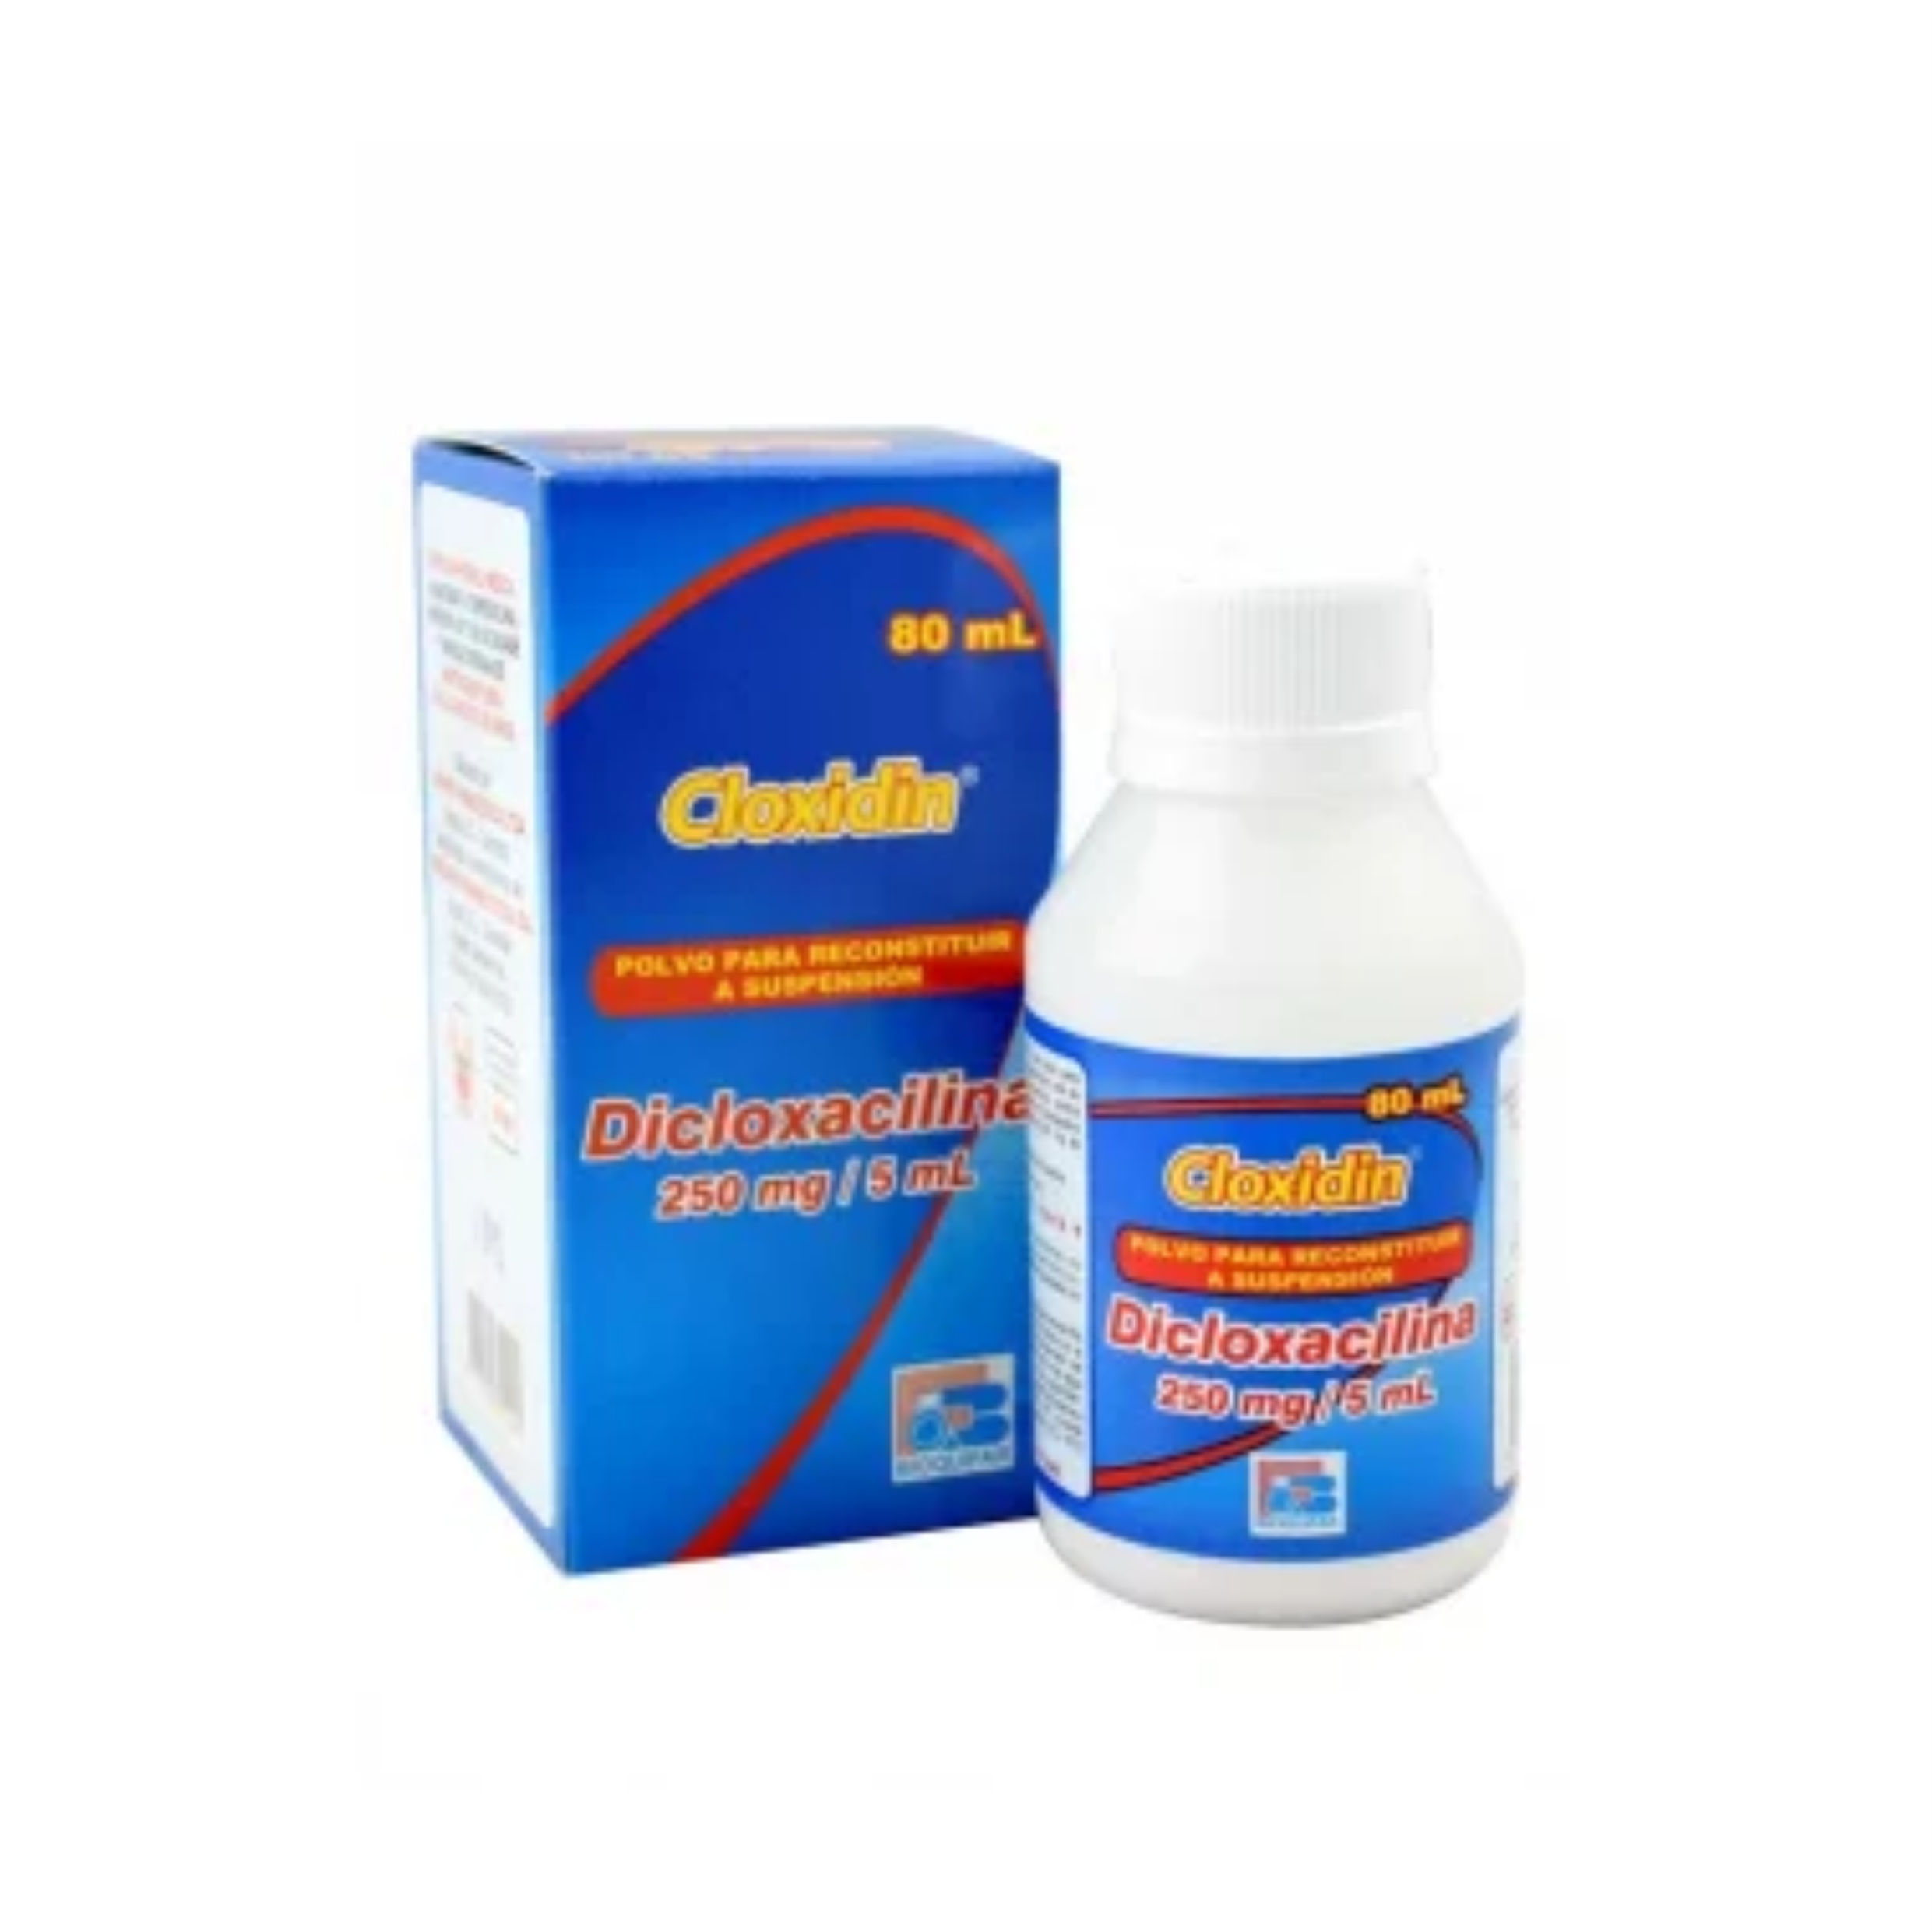 Cloxidin 250 mg / 5 mL Polvo para suspensión 80 mL